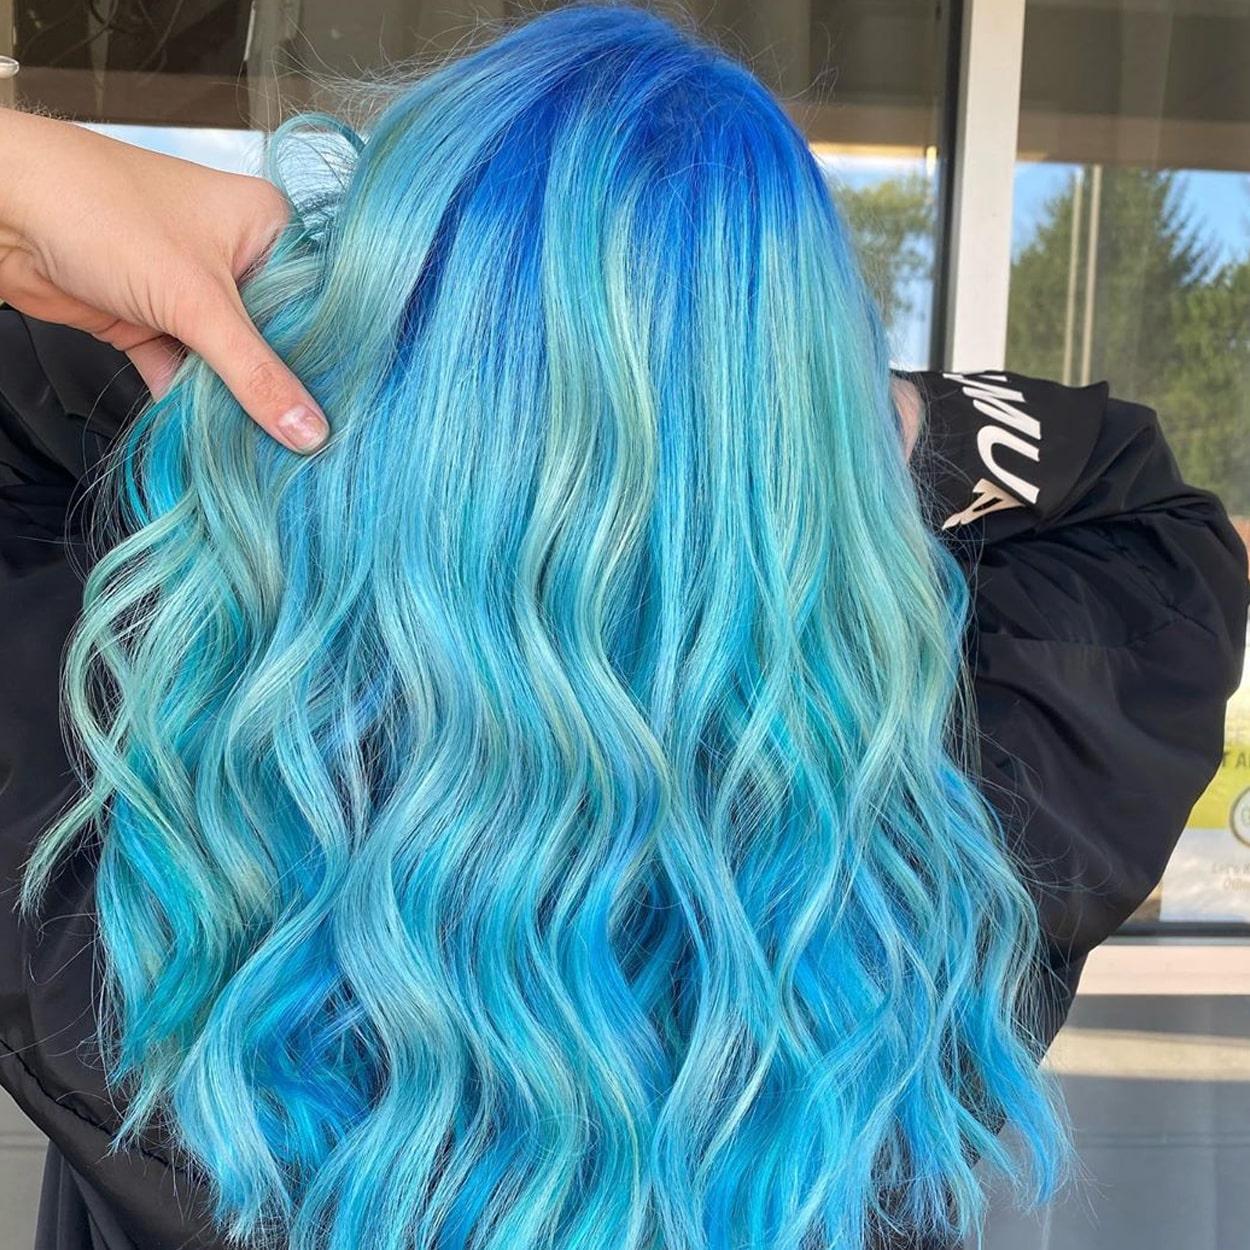 condicionador colorido para cabelo azul